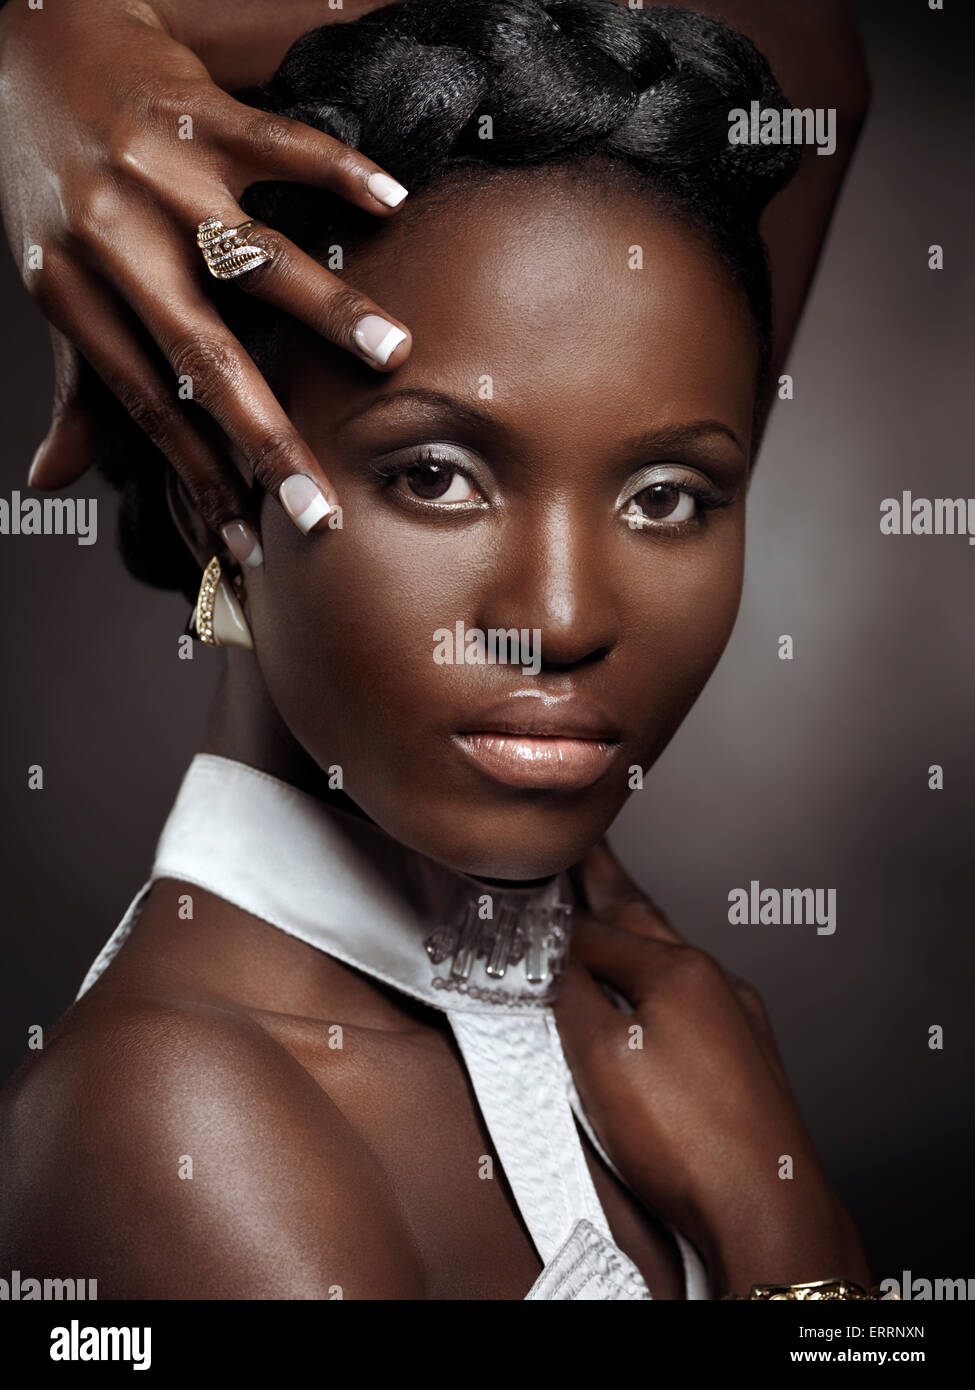 Joven y bella mujer afroamericana belleza artística retrato aislado sobre fondo negro Foto de stock